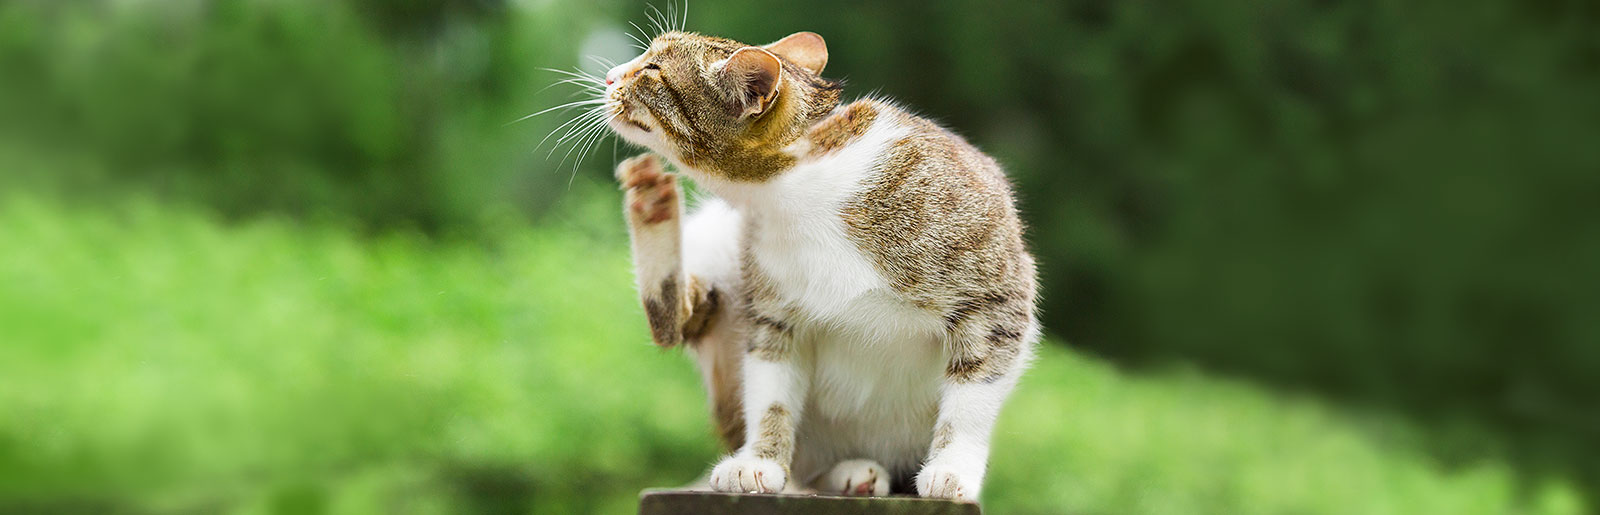 beven pensioen Kwik Voedselallergie of voedselintolerantie bij katten